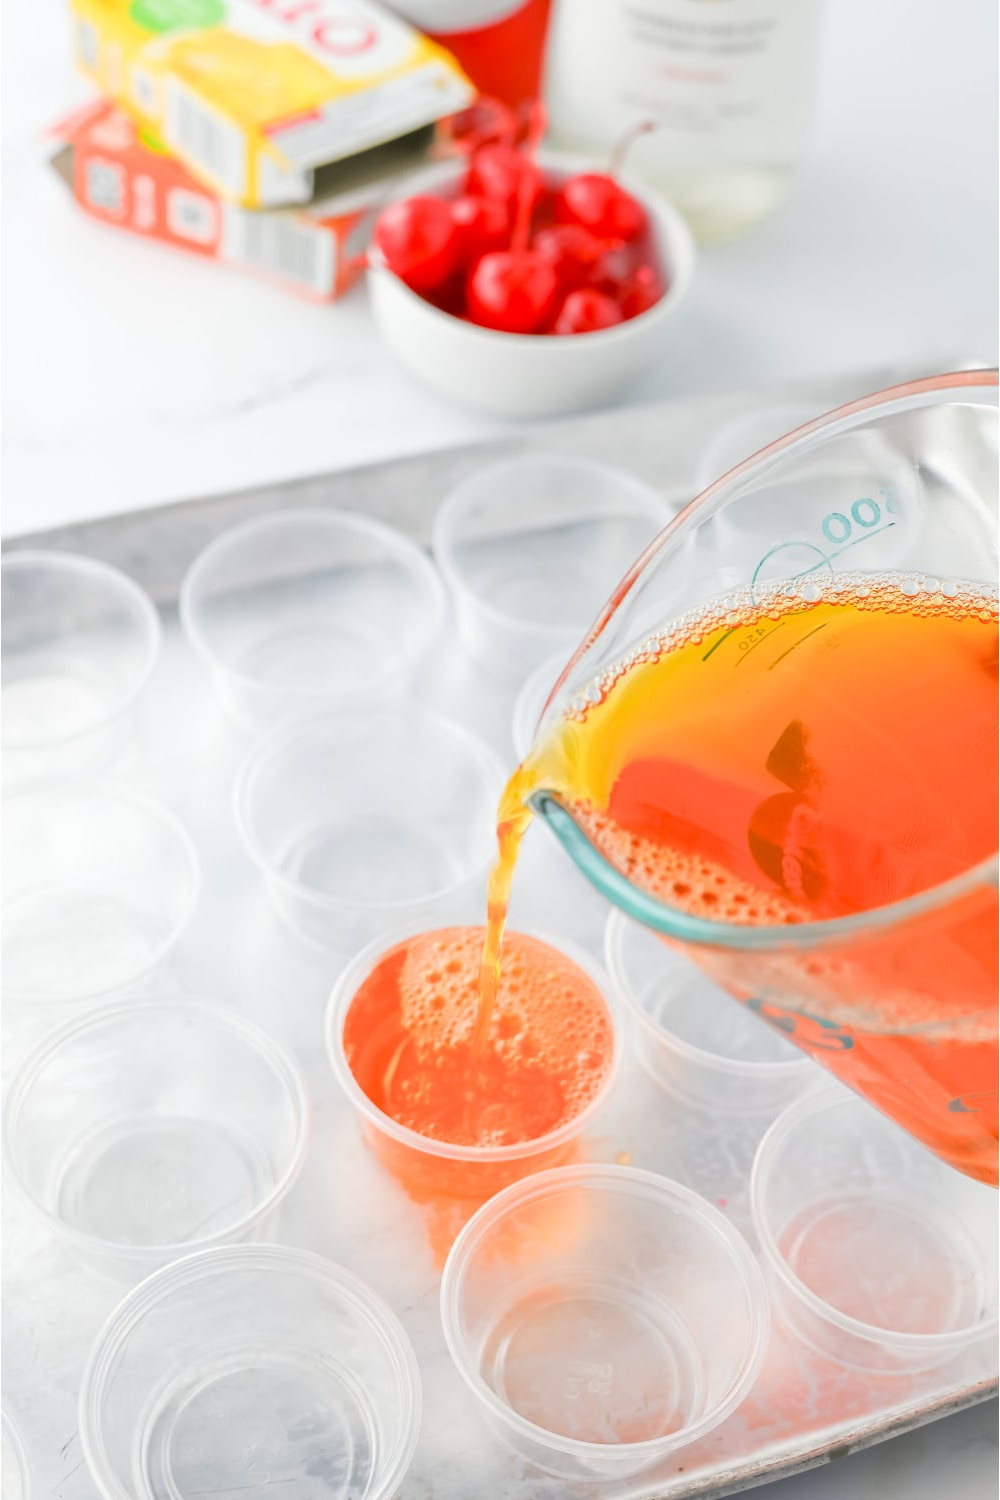 Pour the liquid jello into plastic shot glasses